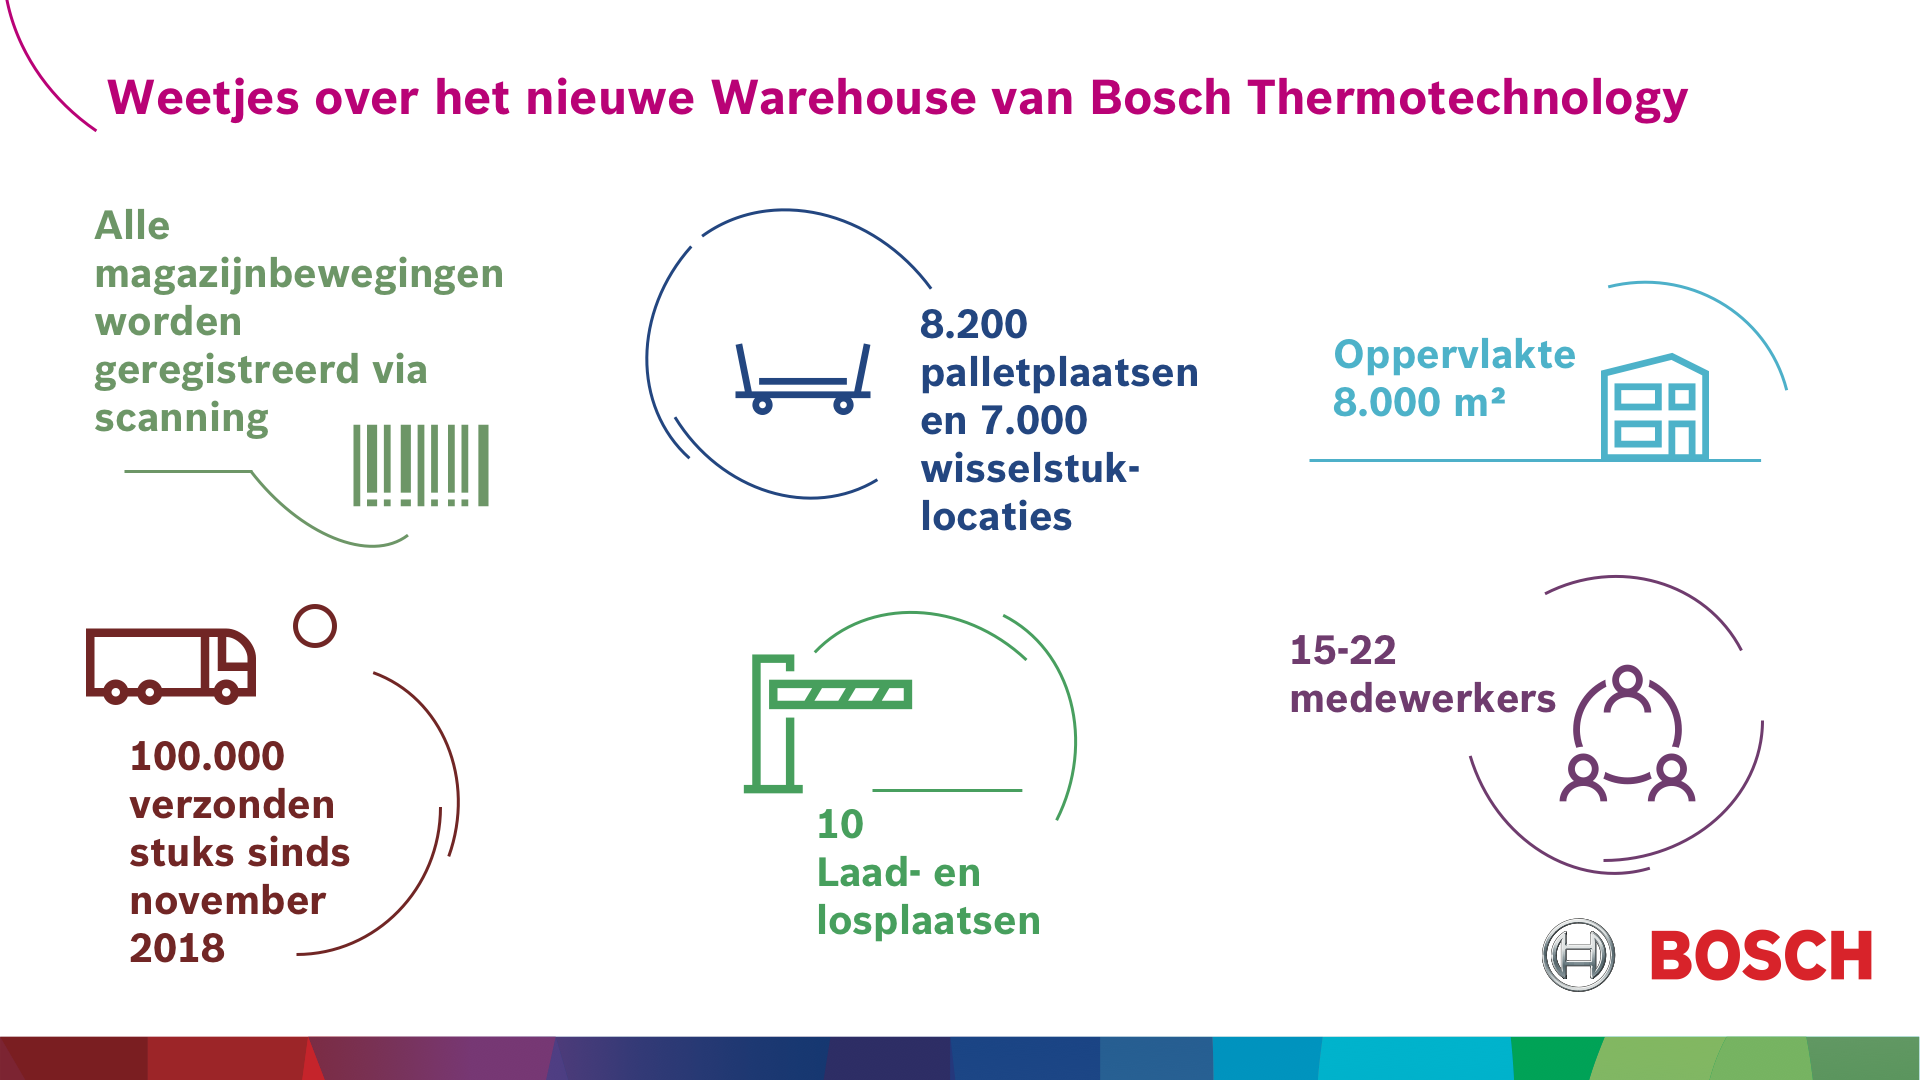 Weetjes over het nieuwe Warehouse van Bosch Thermotechnology